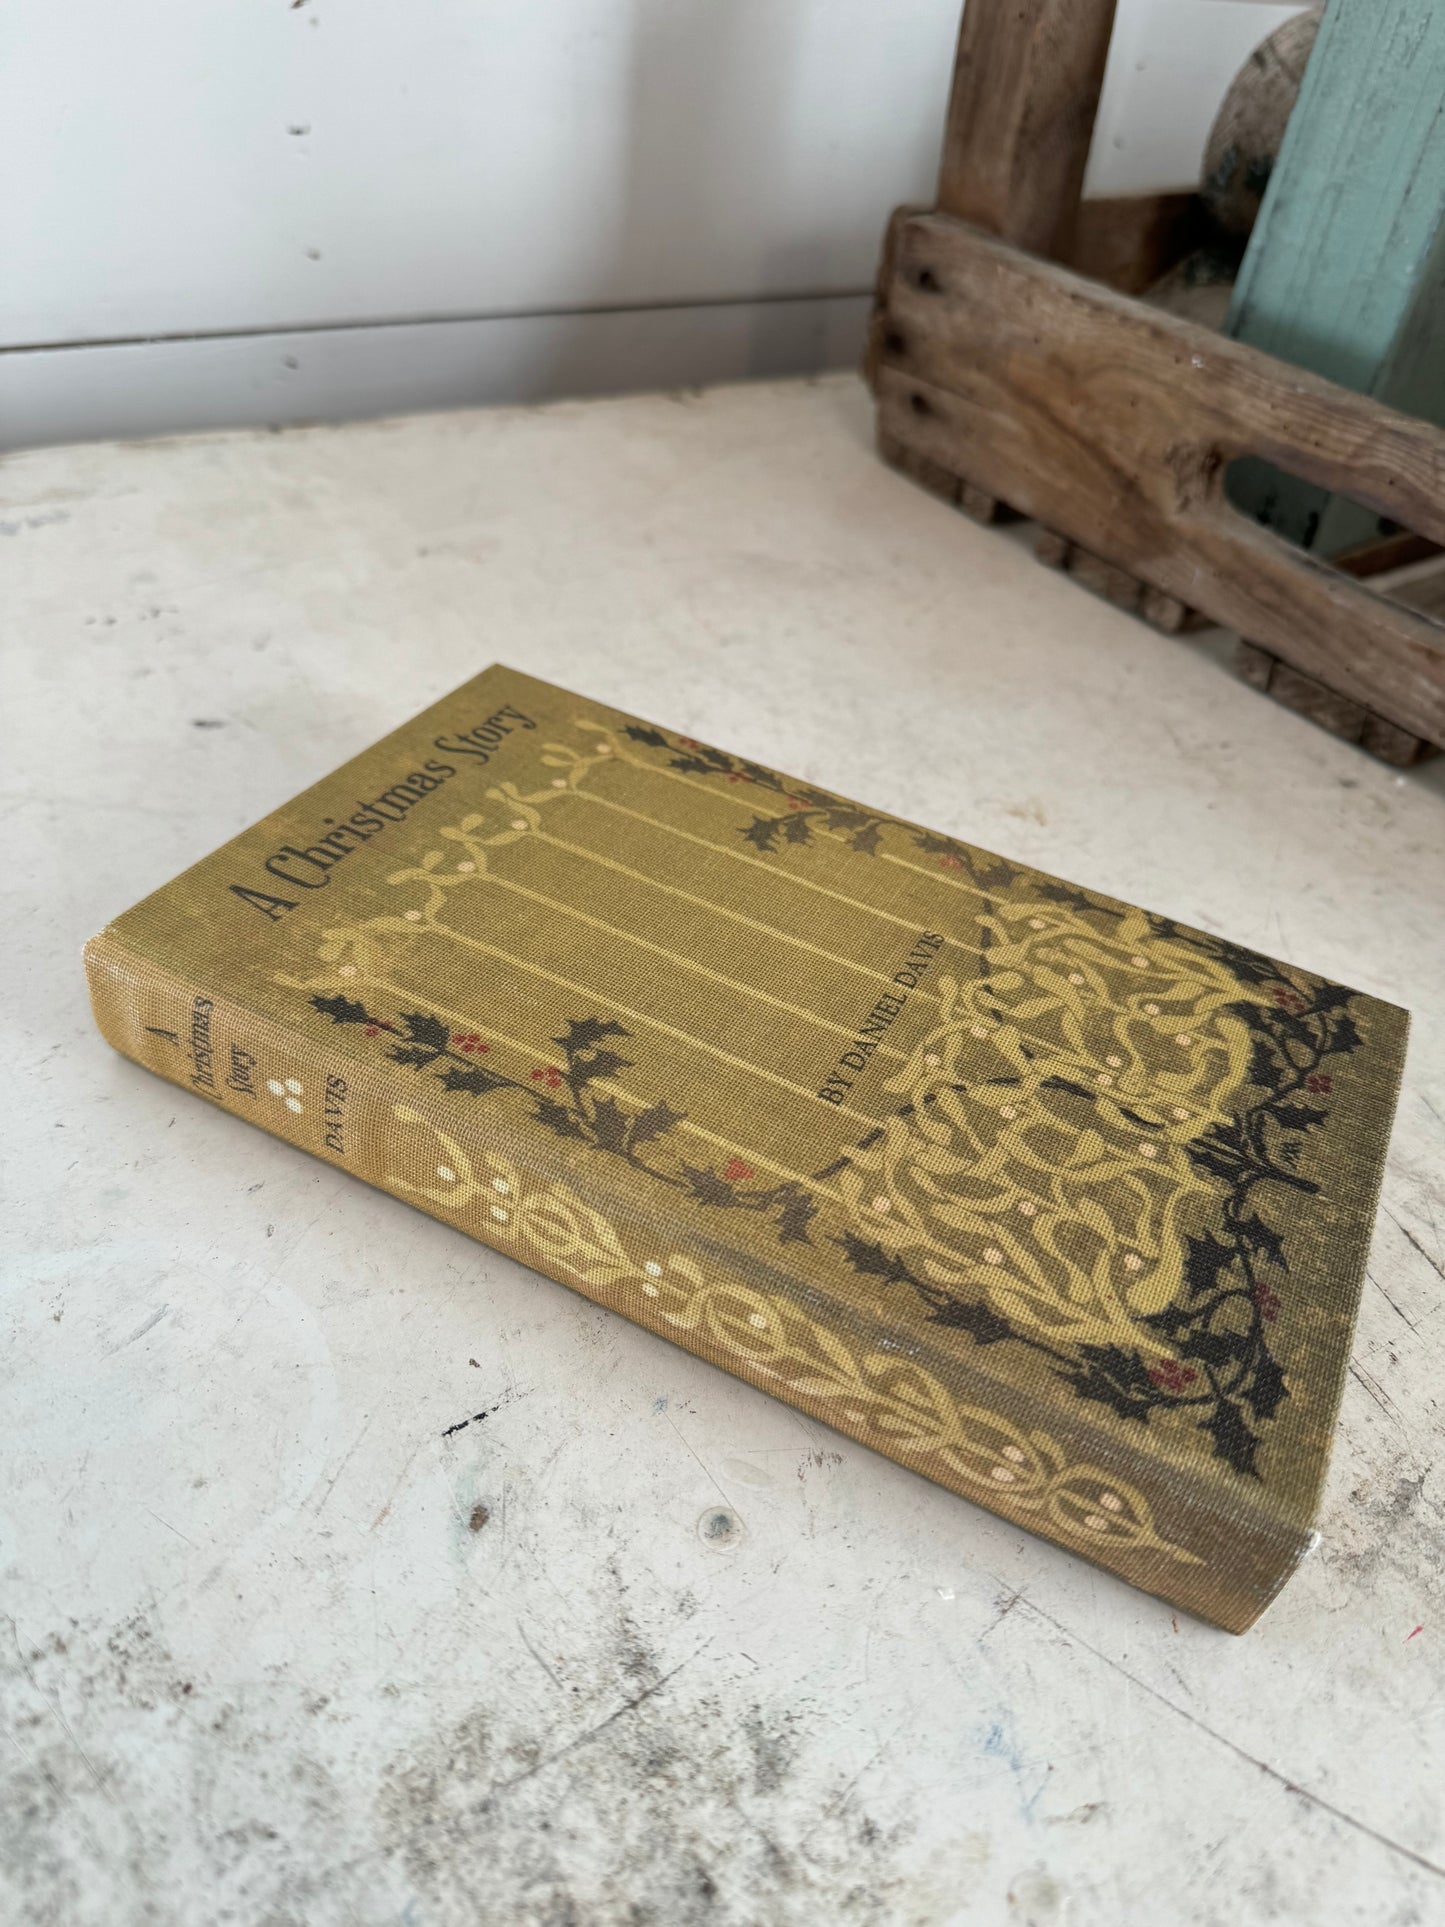 Vintage Looking Book Box